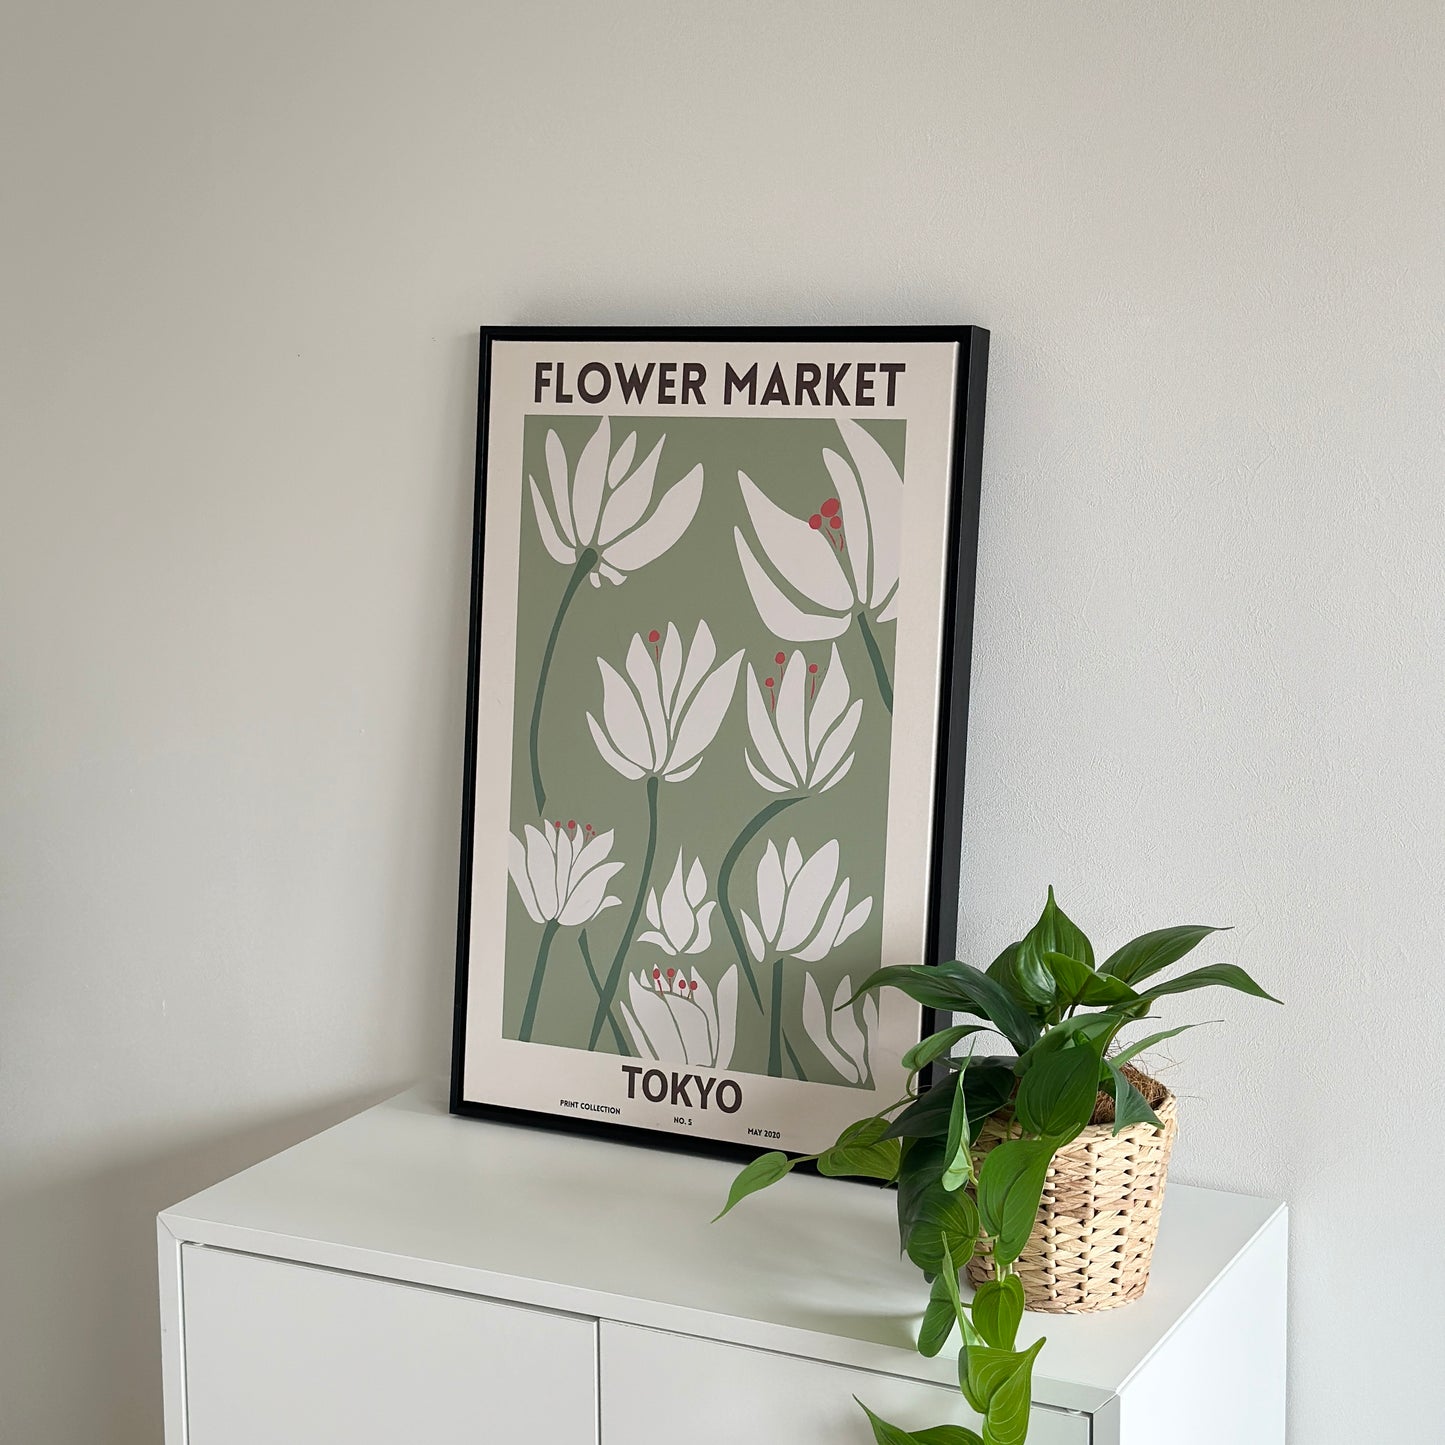 棚の上に置かれたグリーンを基調とした花のイラストが描かれたアートと植物